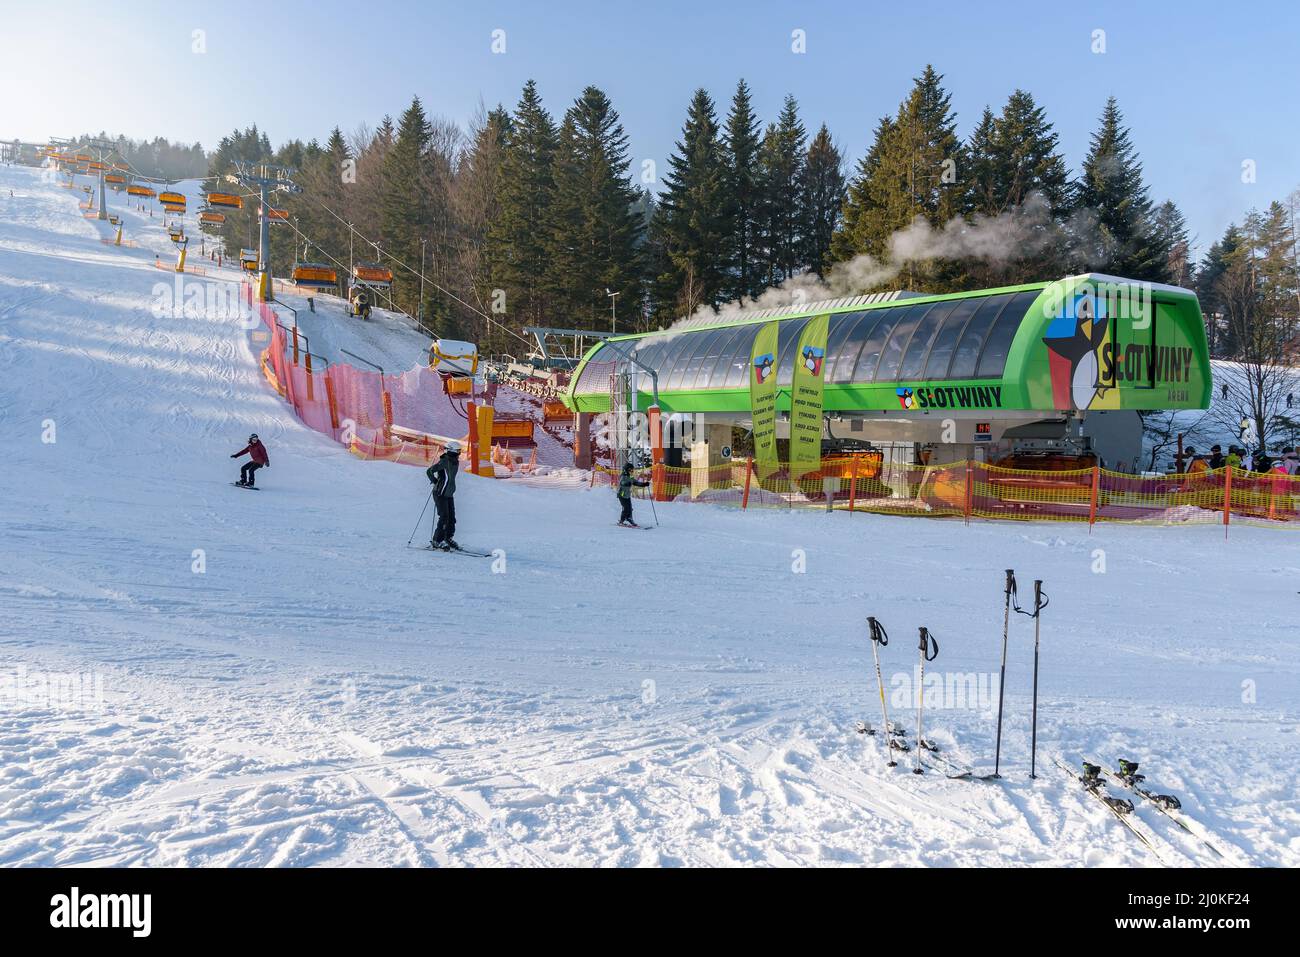 Krynica Zdroj, Polonia - 27 de enero de 2020: Esquiadores en la estación inferior de telesilla moderna en la estación de esquí Slotwiny Arena Foto de stock